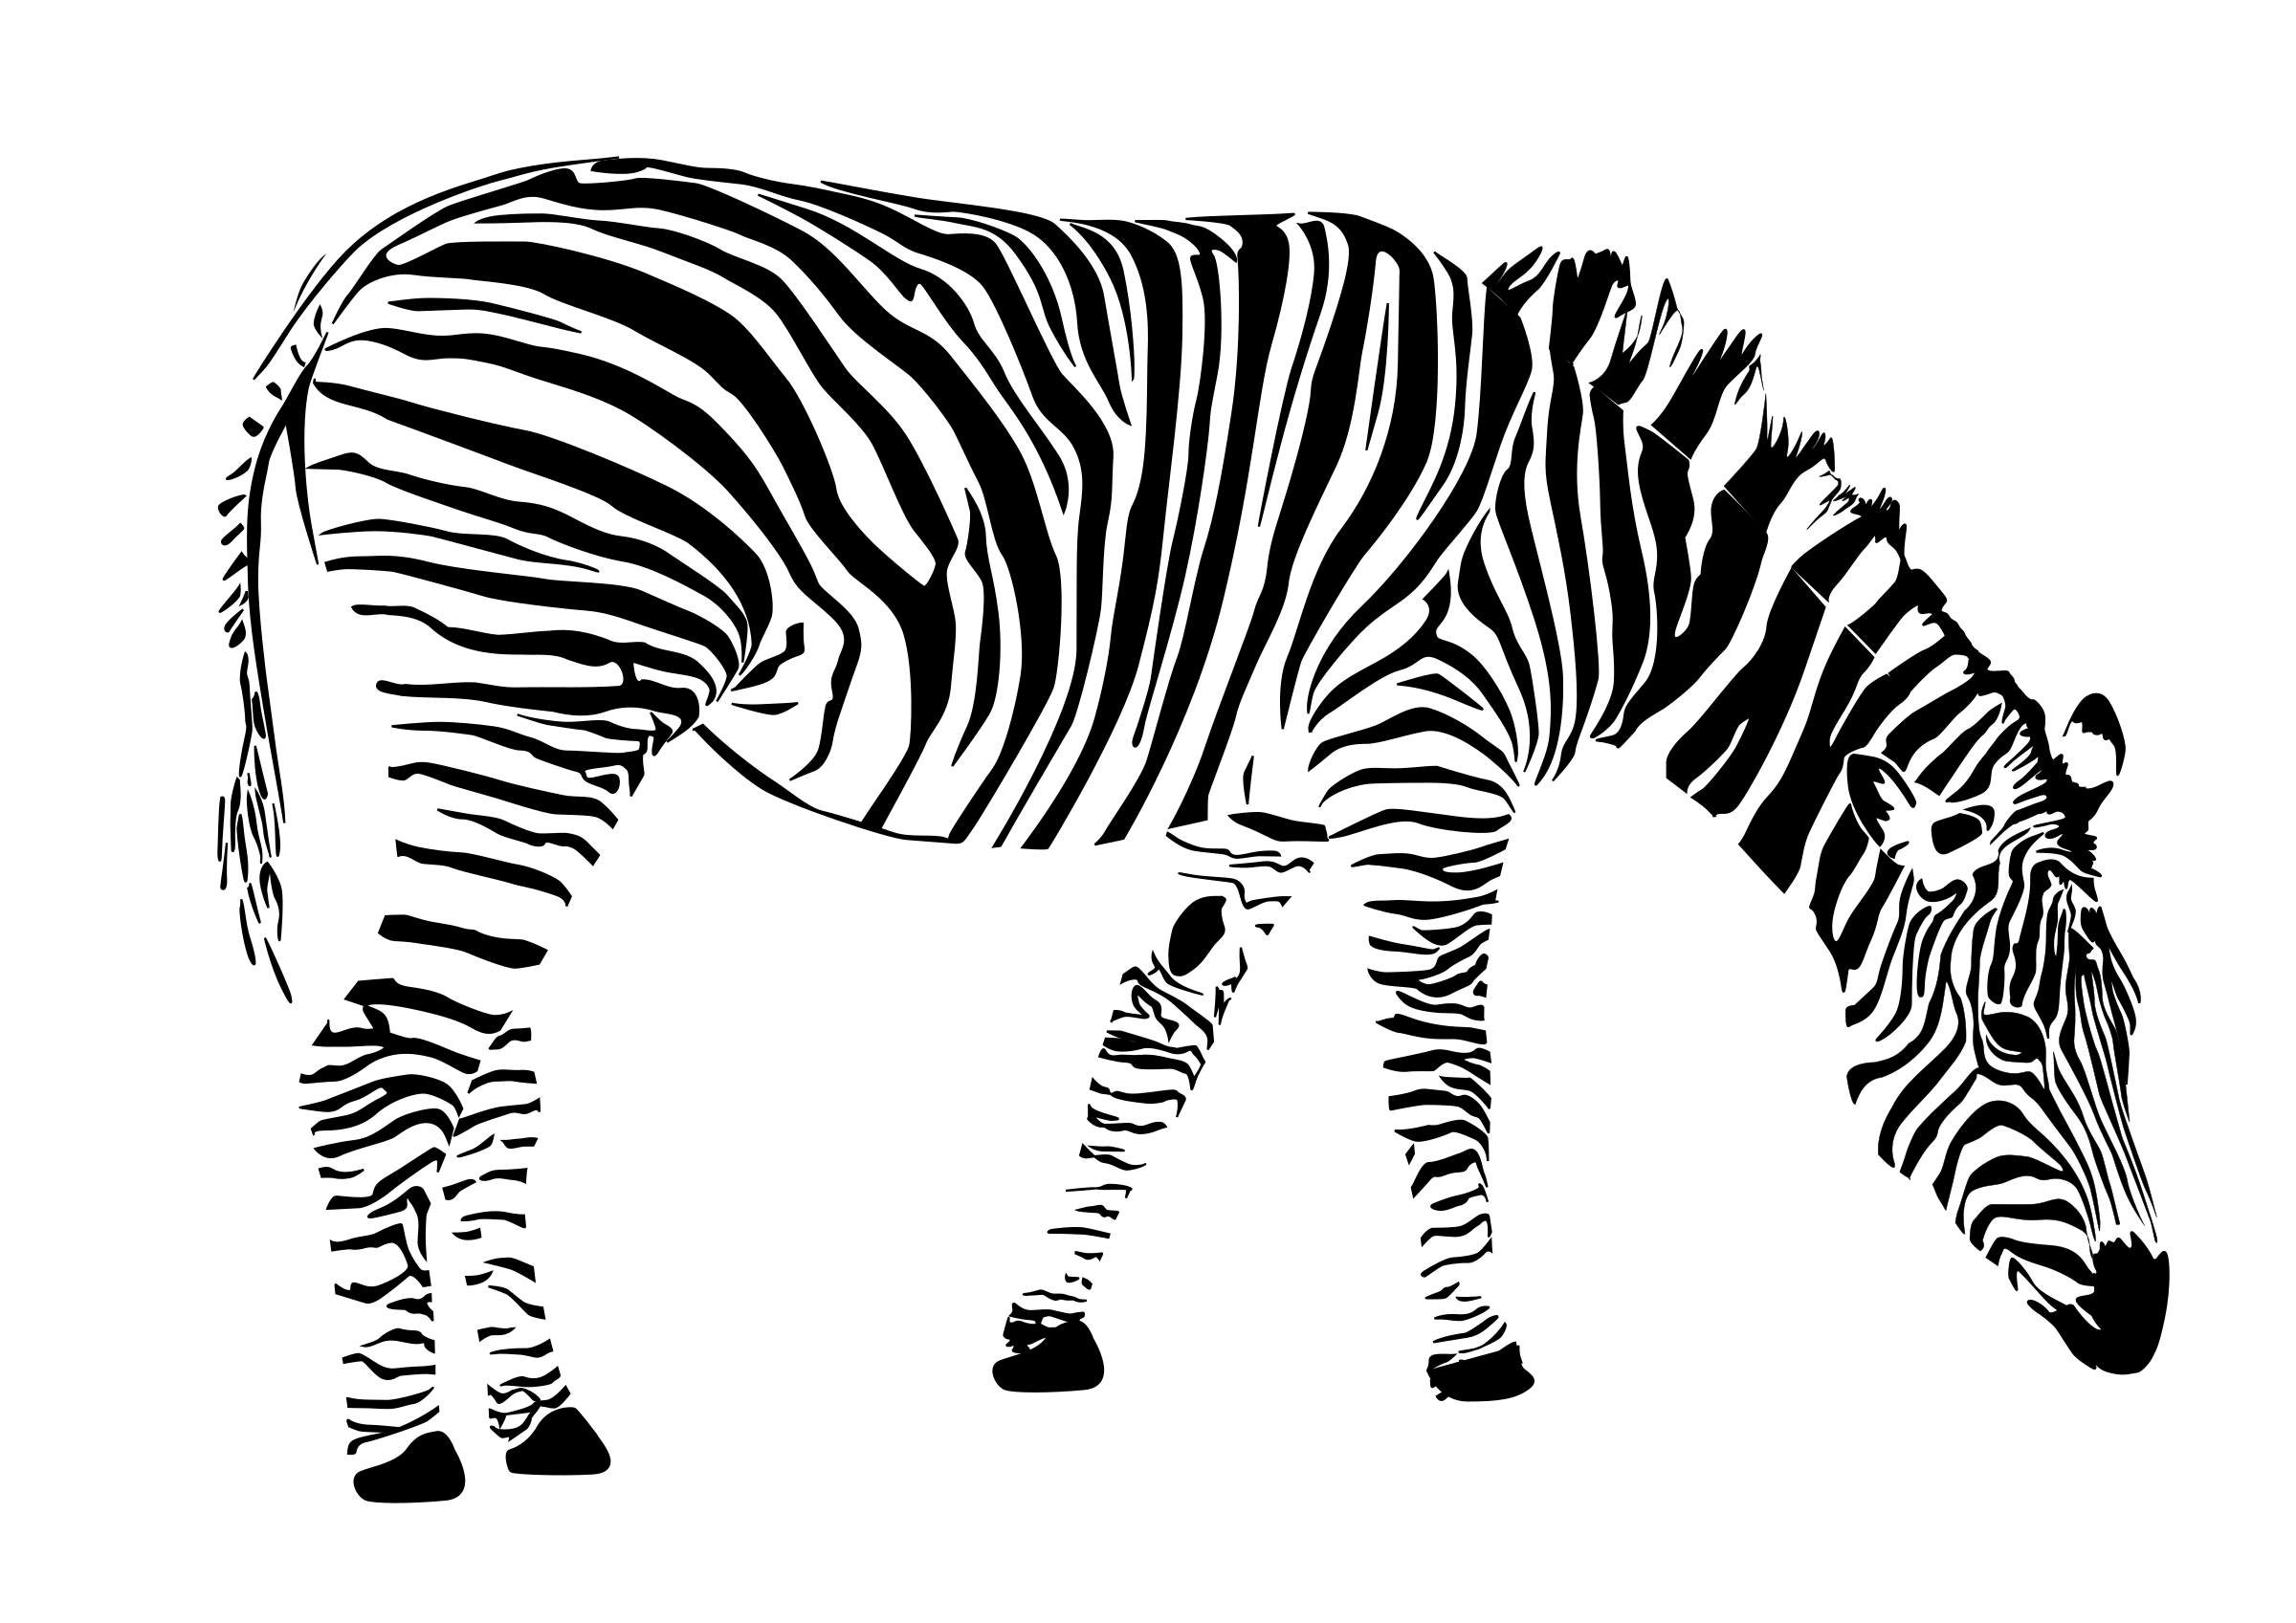 clipart zebra black and white